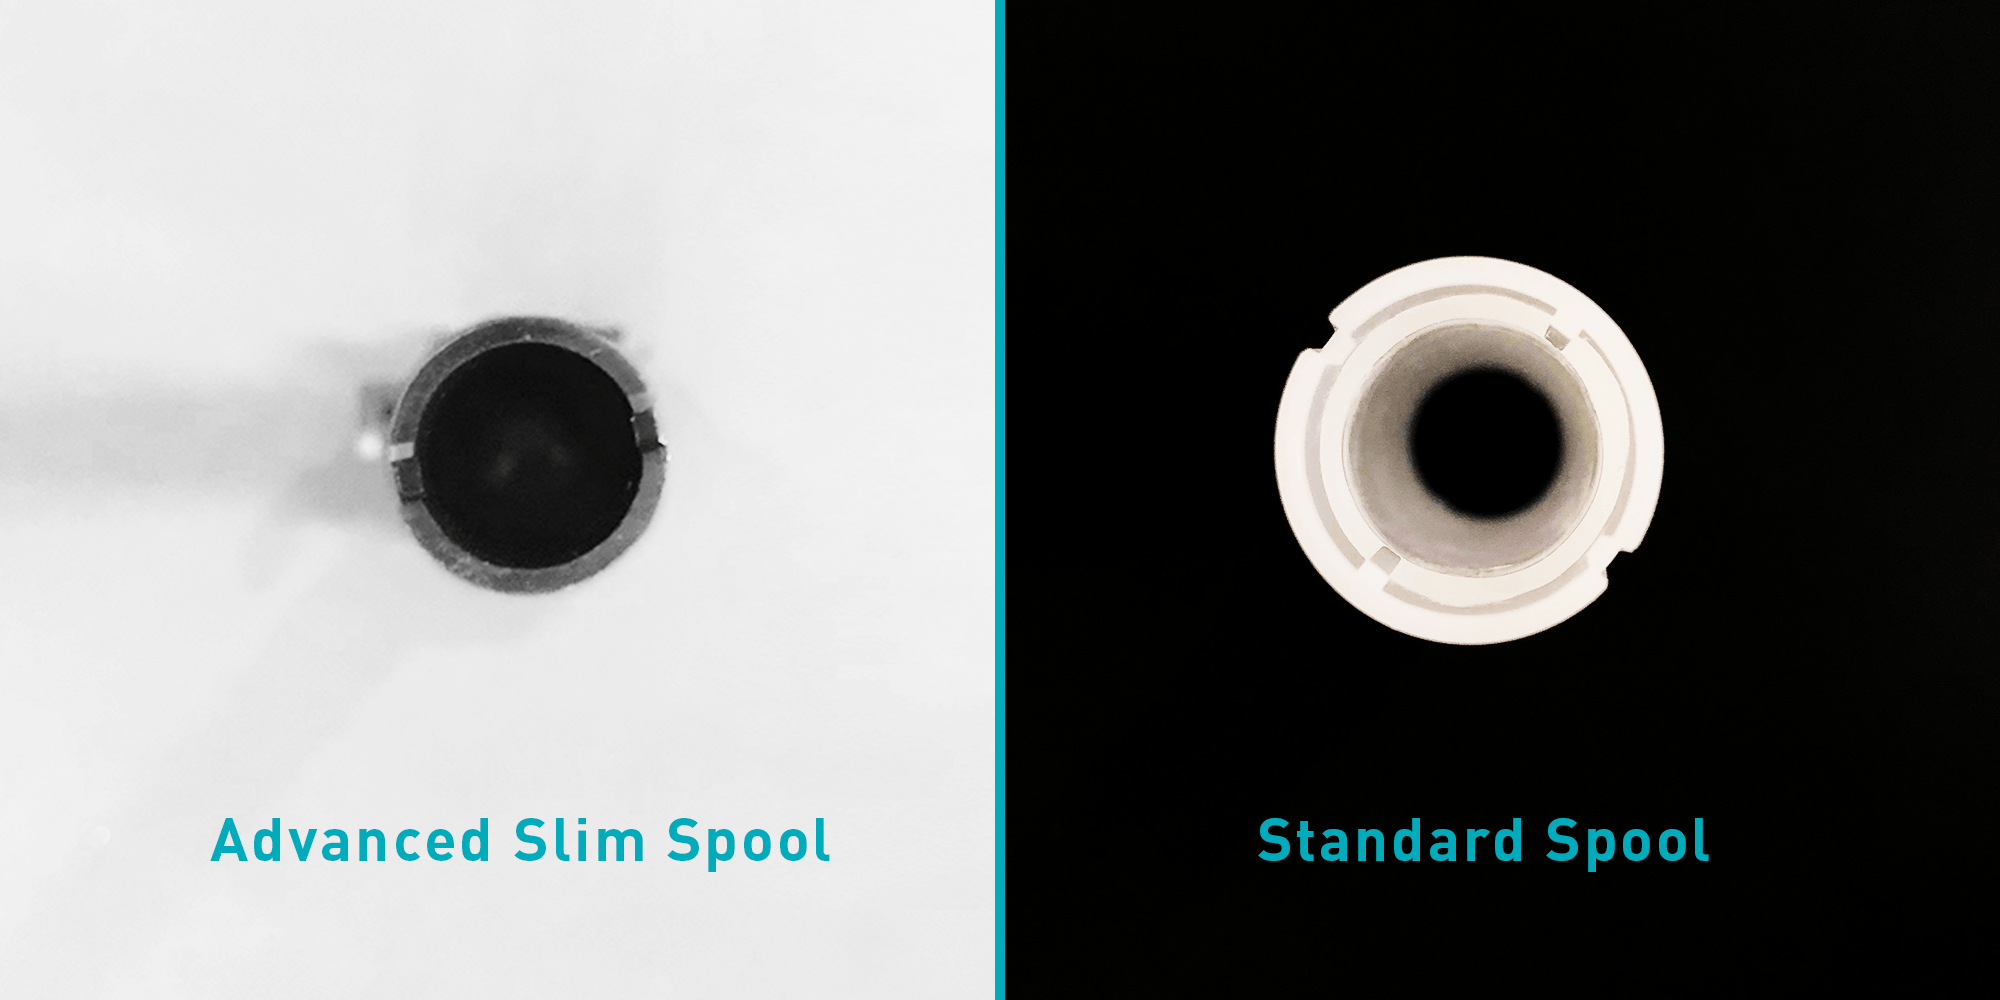 Slim and Standard diameter